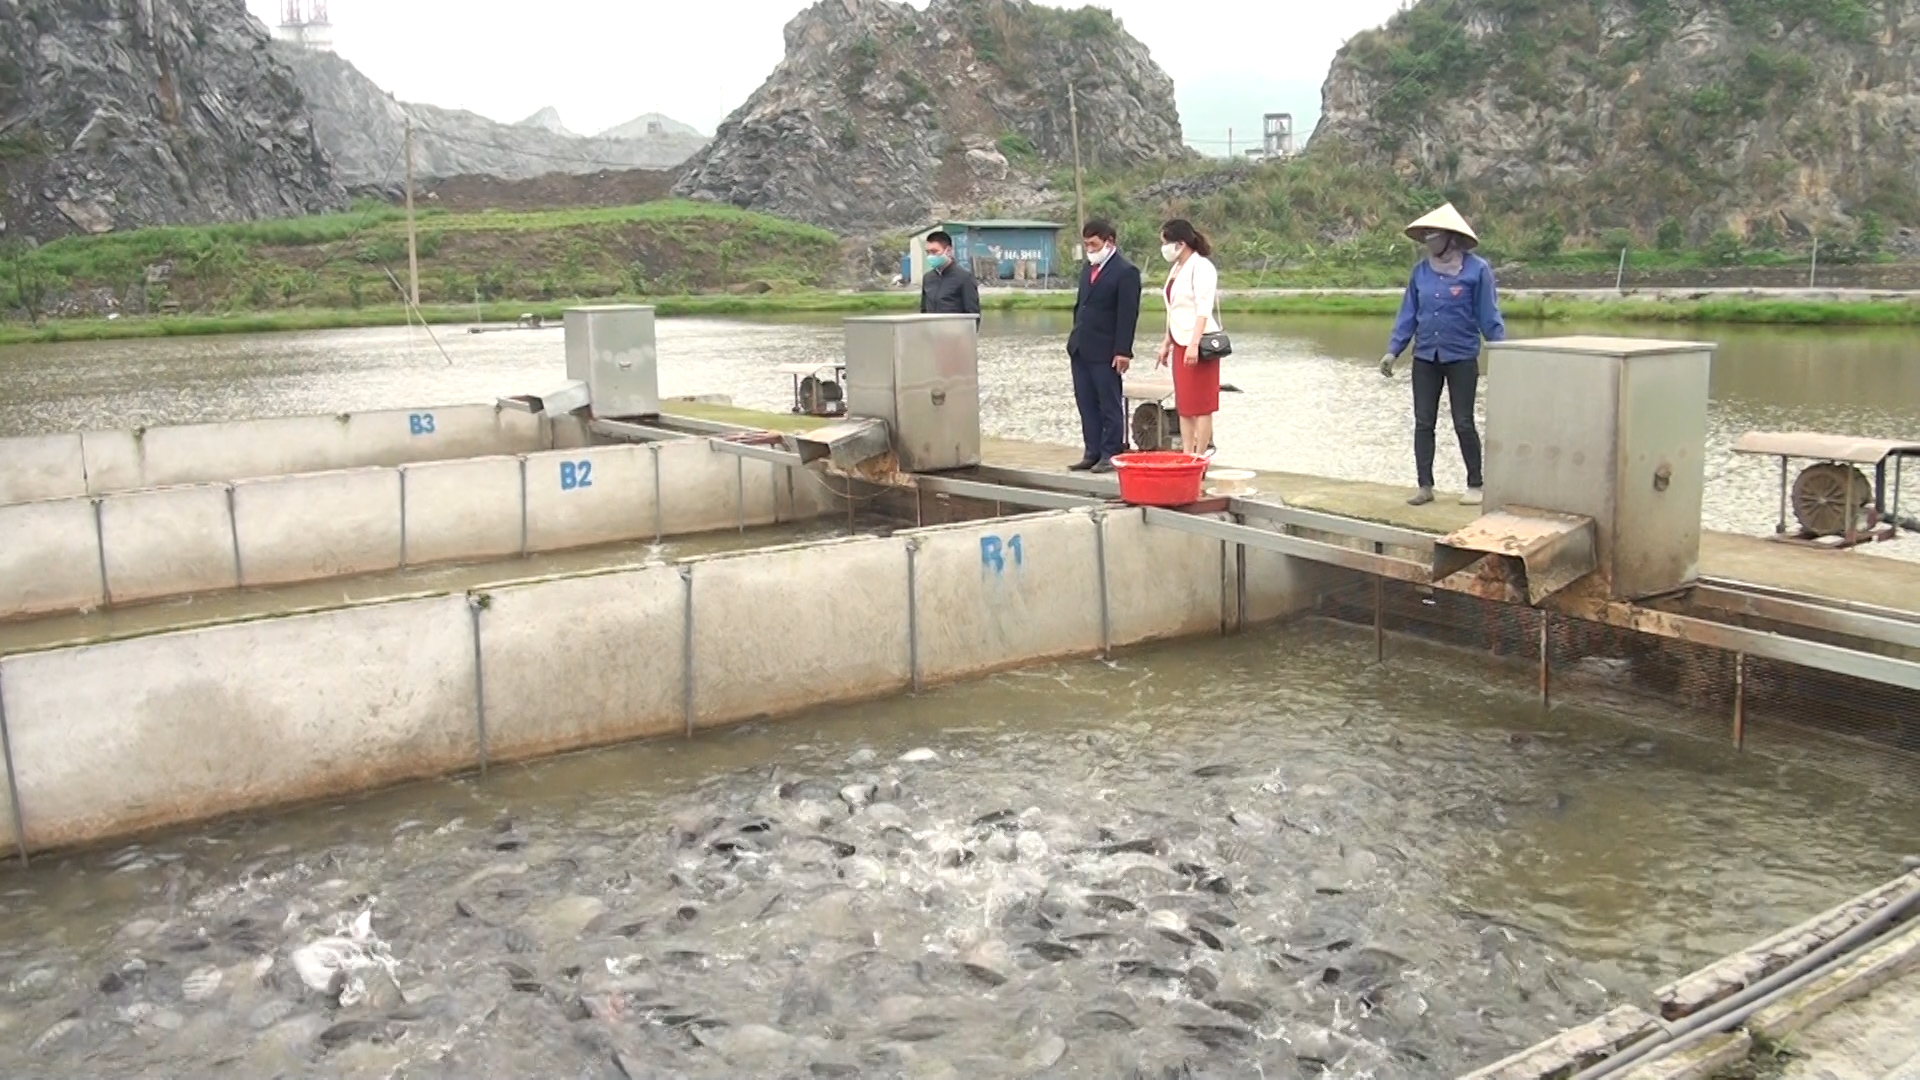 Khởi nghiệp thành công với mô hình tạo sông trong ao  Khoa học ứng dụng   Vietnam VietnamPlus